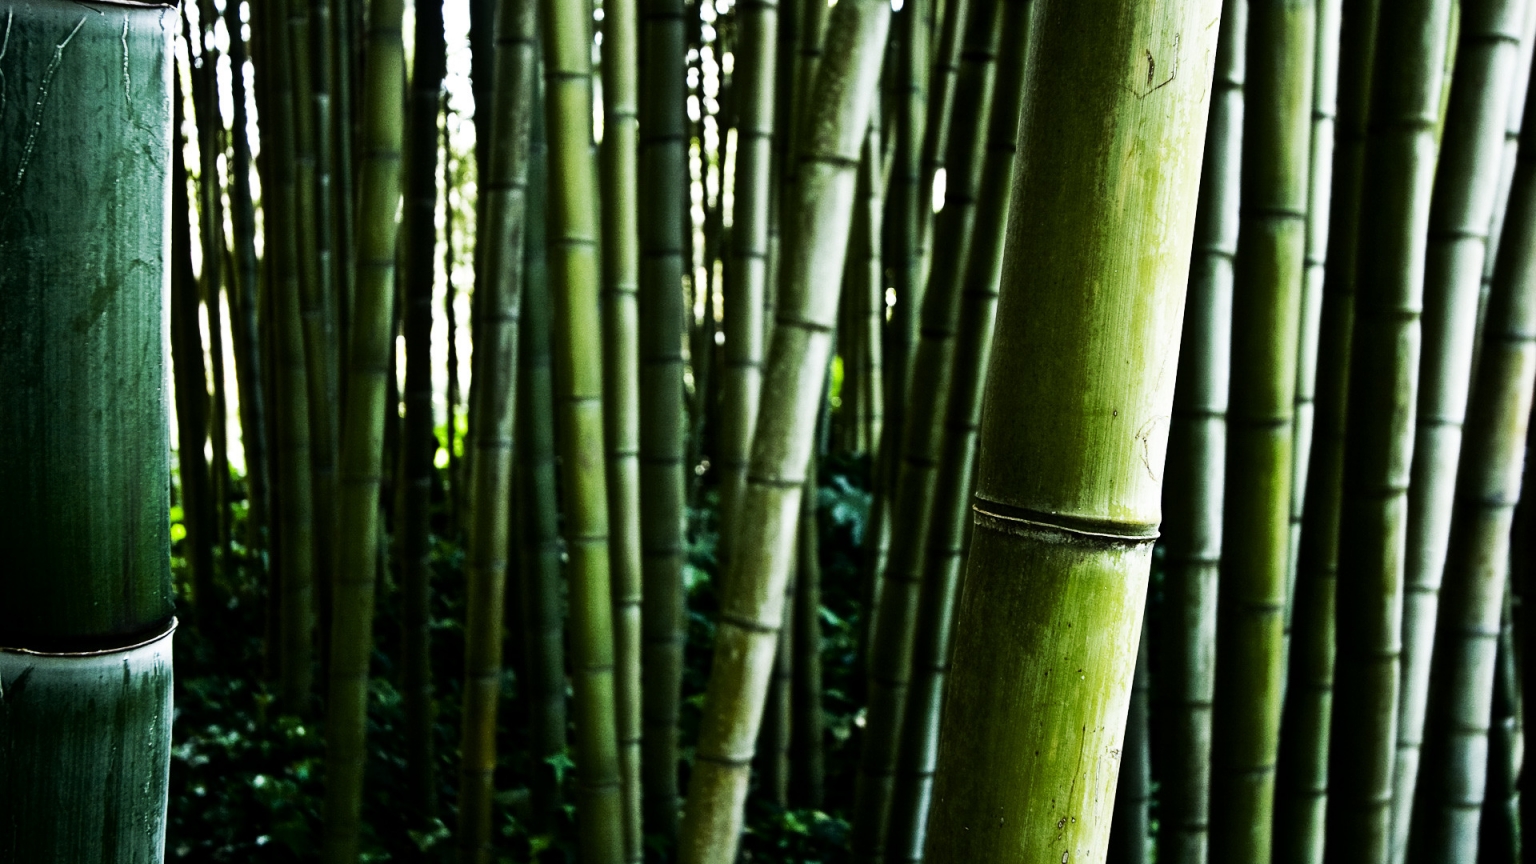 Bamboo stalks for 1536 x 864 HDTV resolution